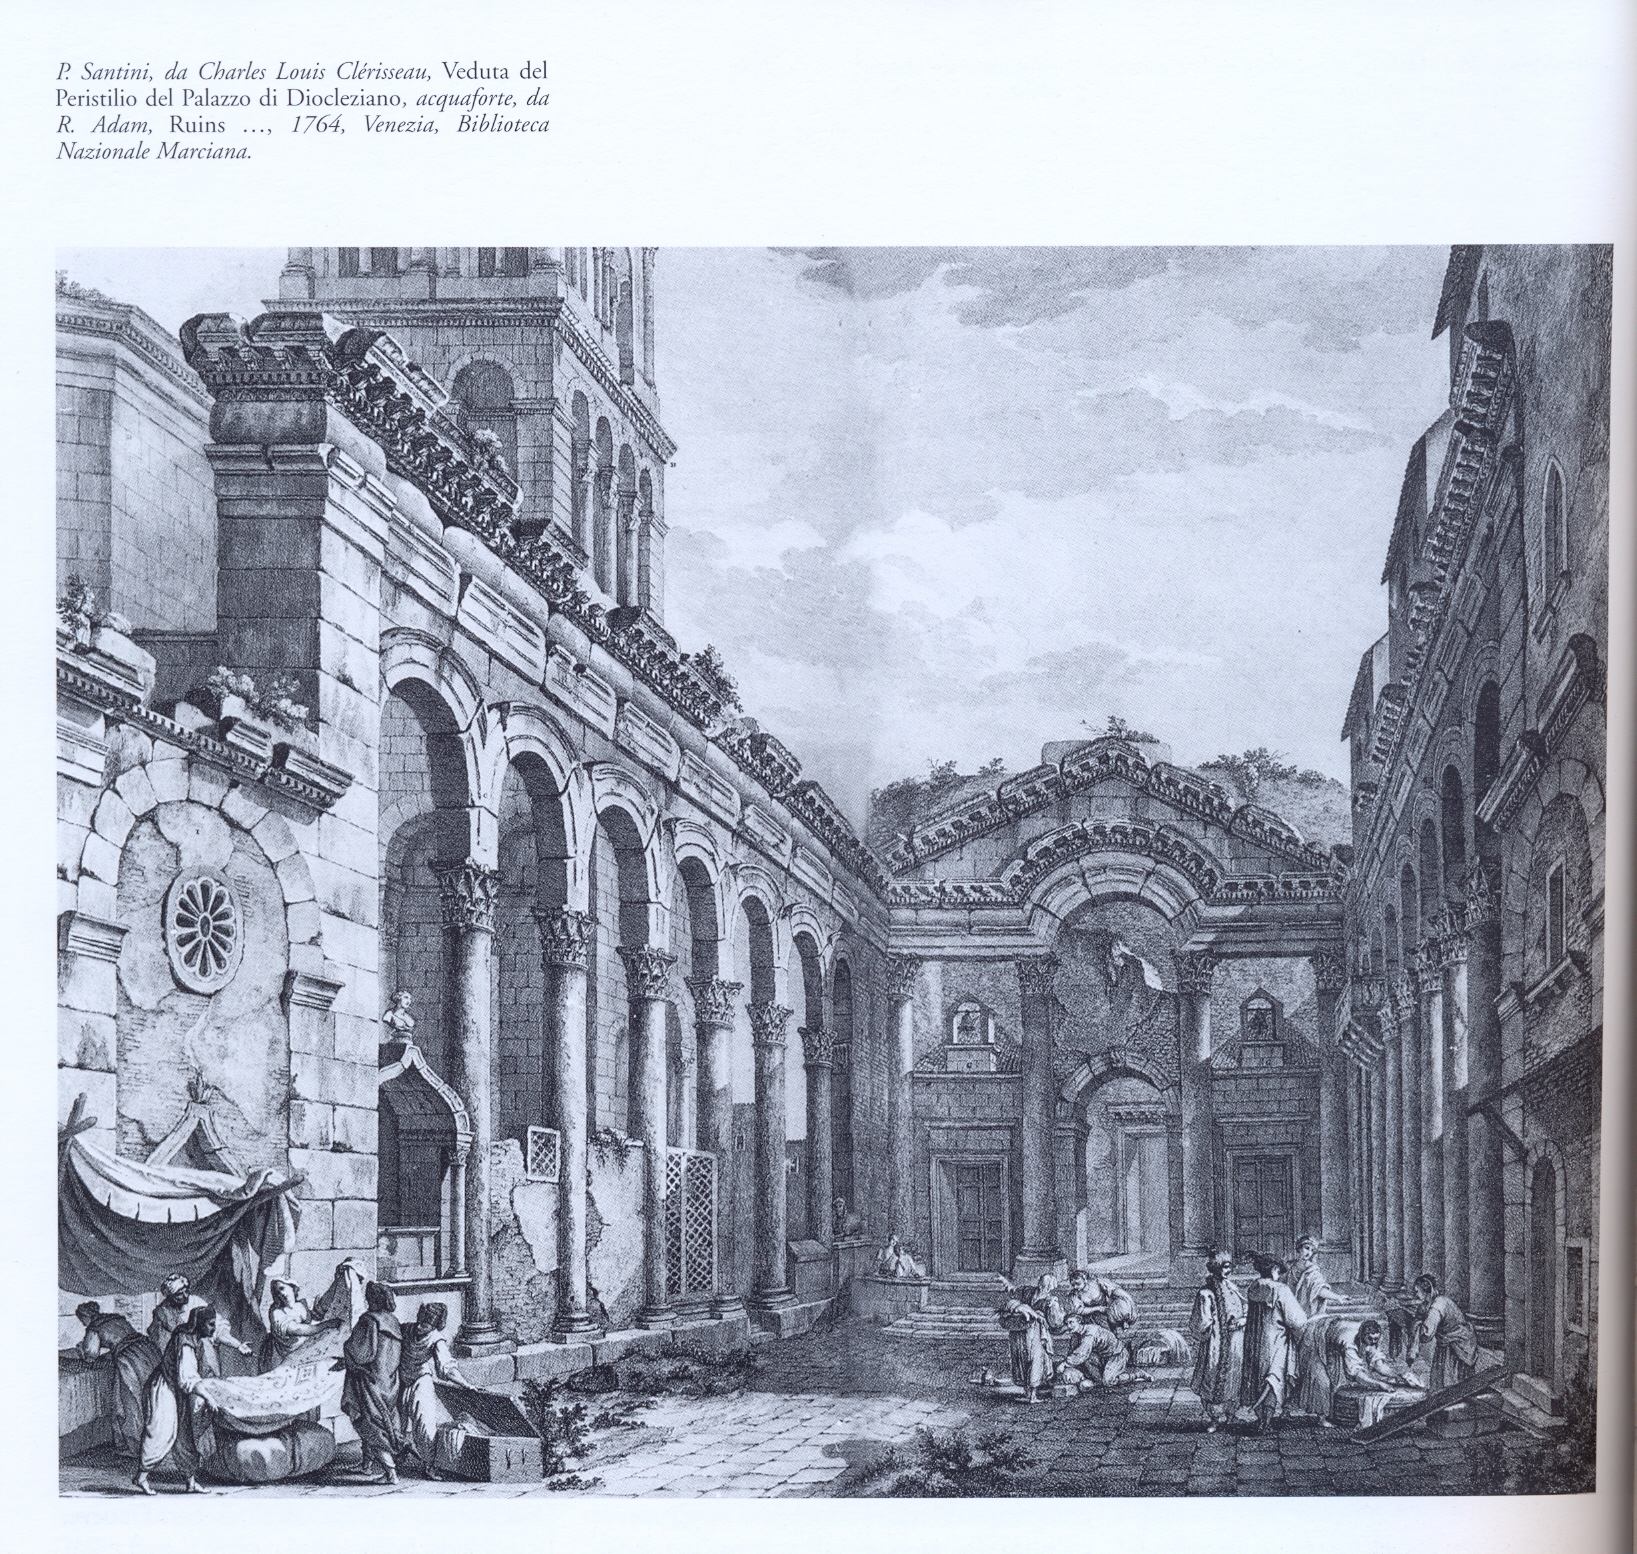 Salona. Peristilio del Palazzo di Diocleziano